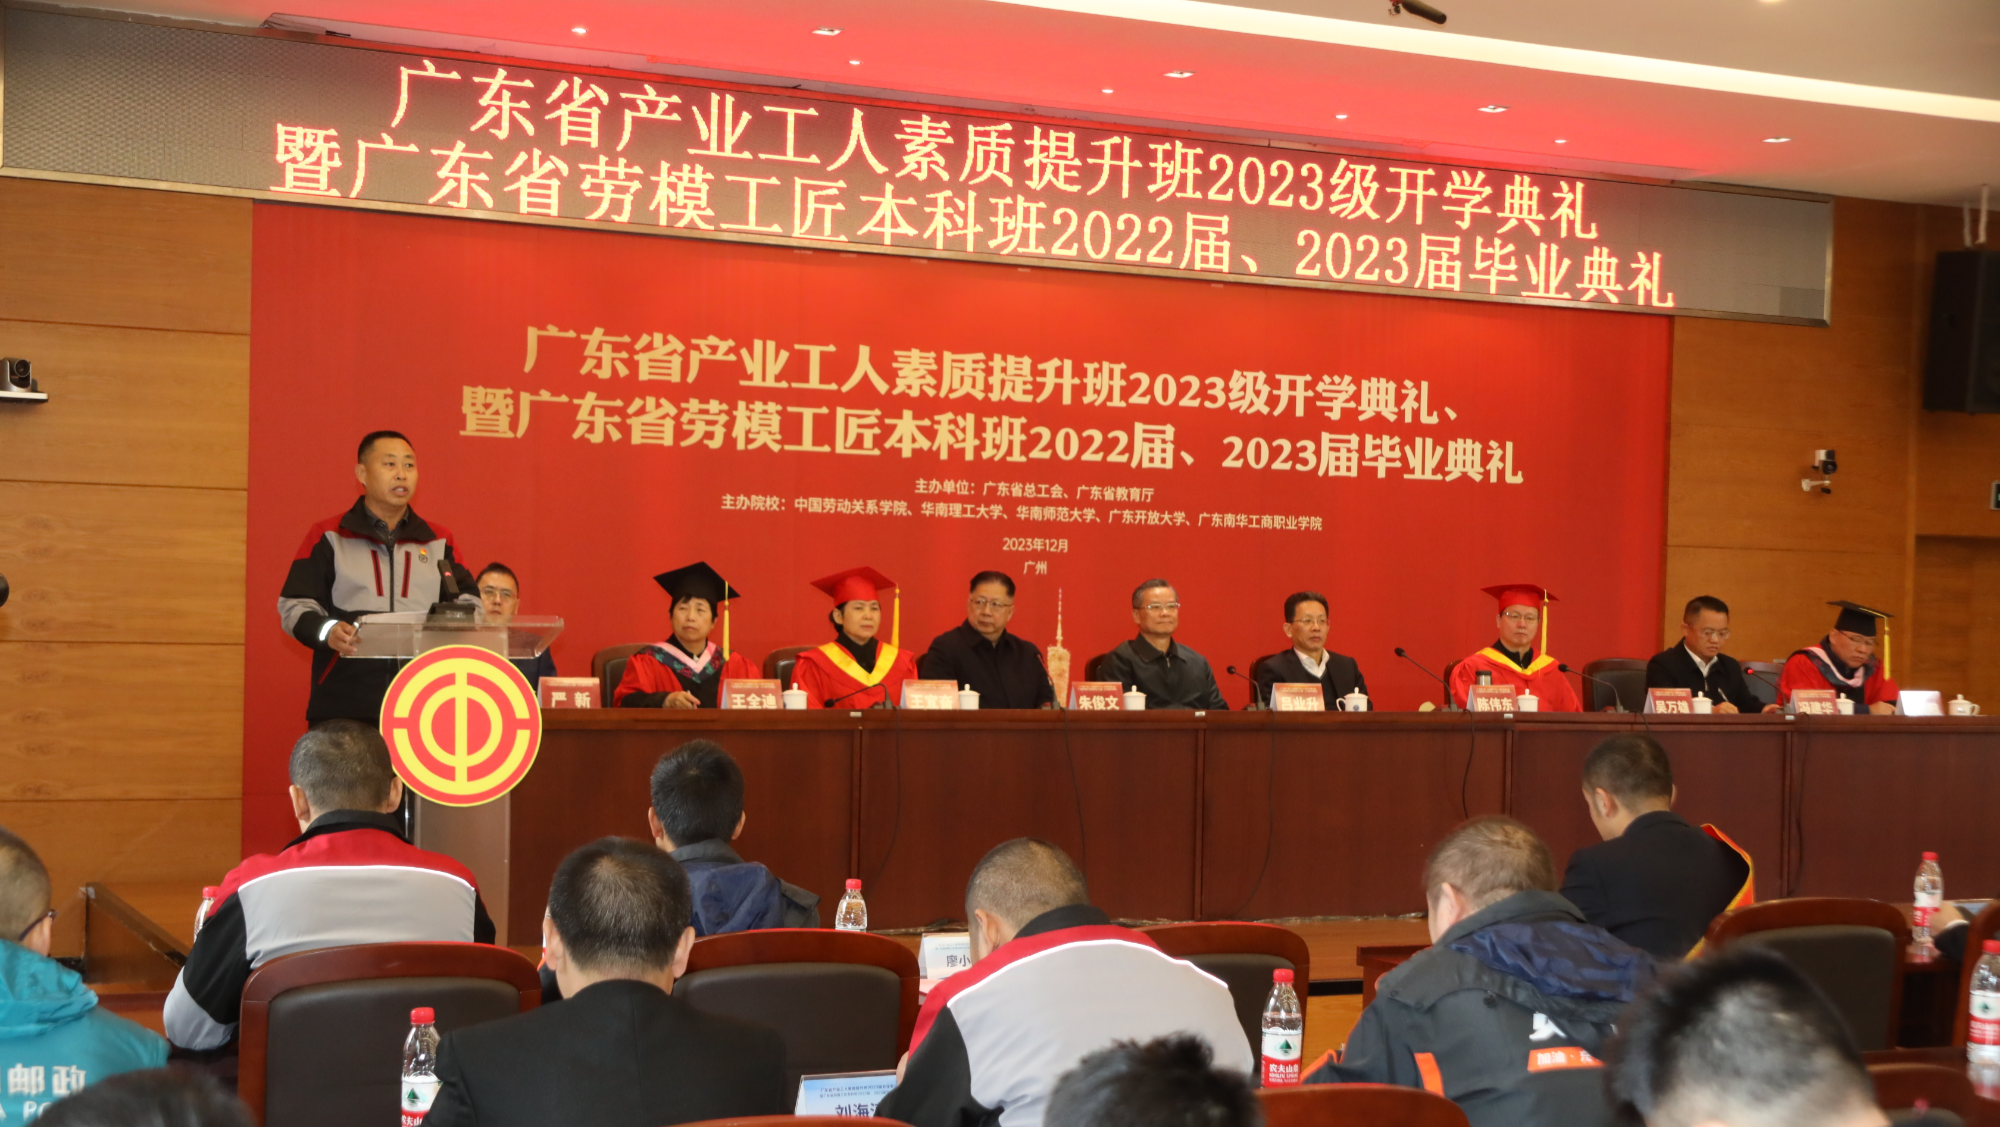 广东省产业工人素质提升班2023级开学典礼暨劳模工匠本科班2022届、2023届毕业典礼举行